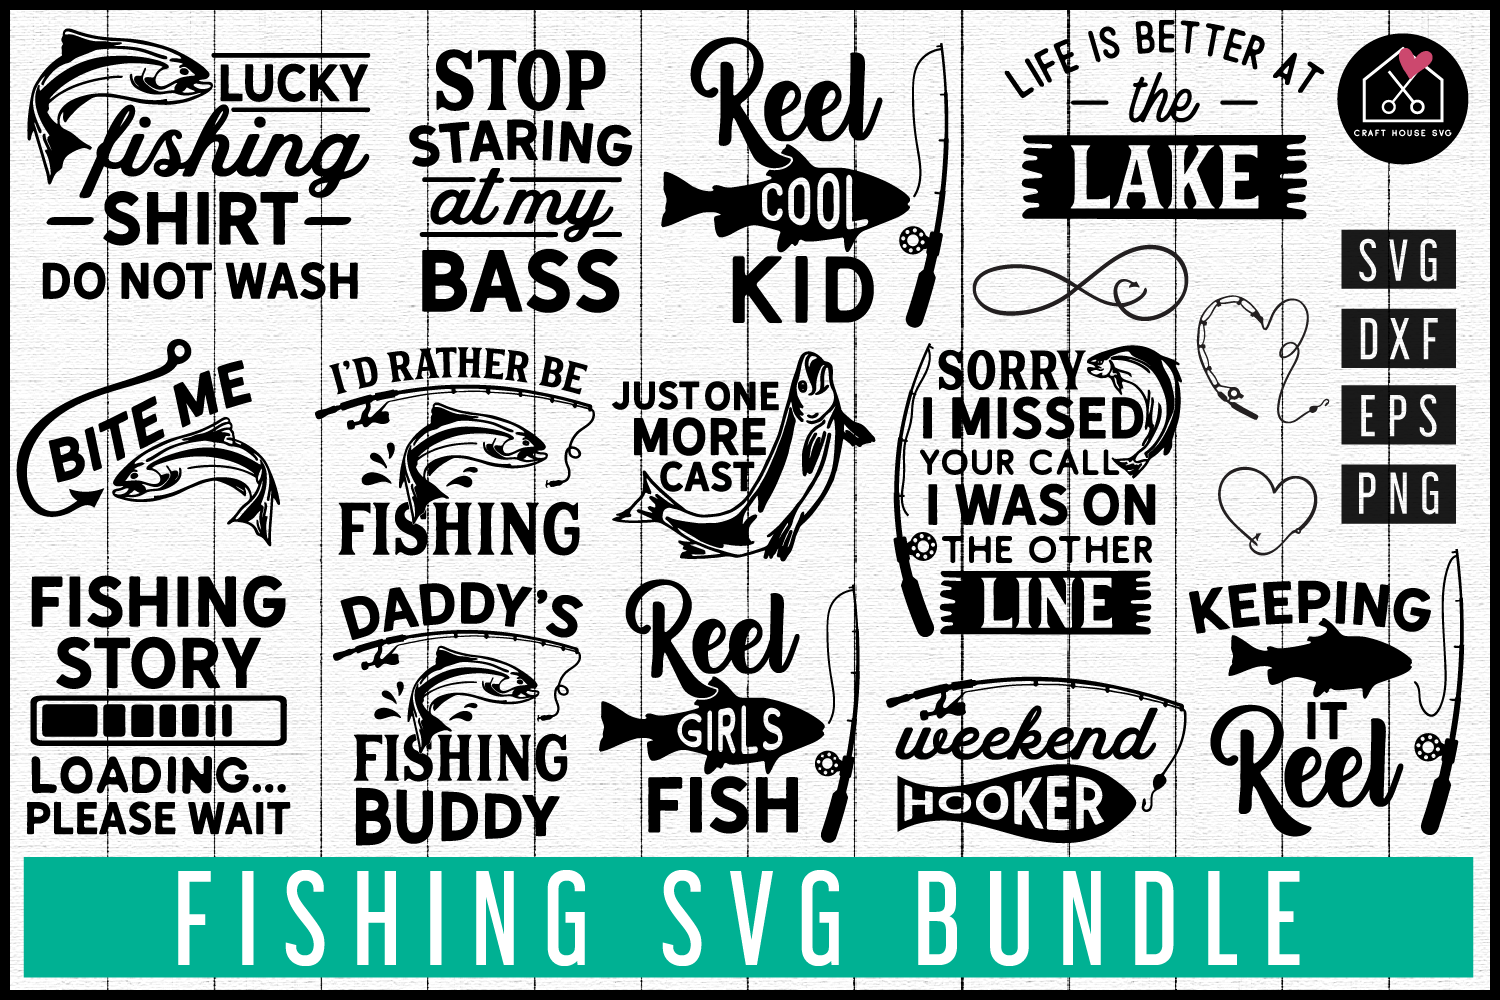 Download Fishing SVG Bundle | MB78 - Craft House SVG